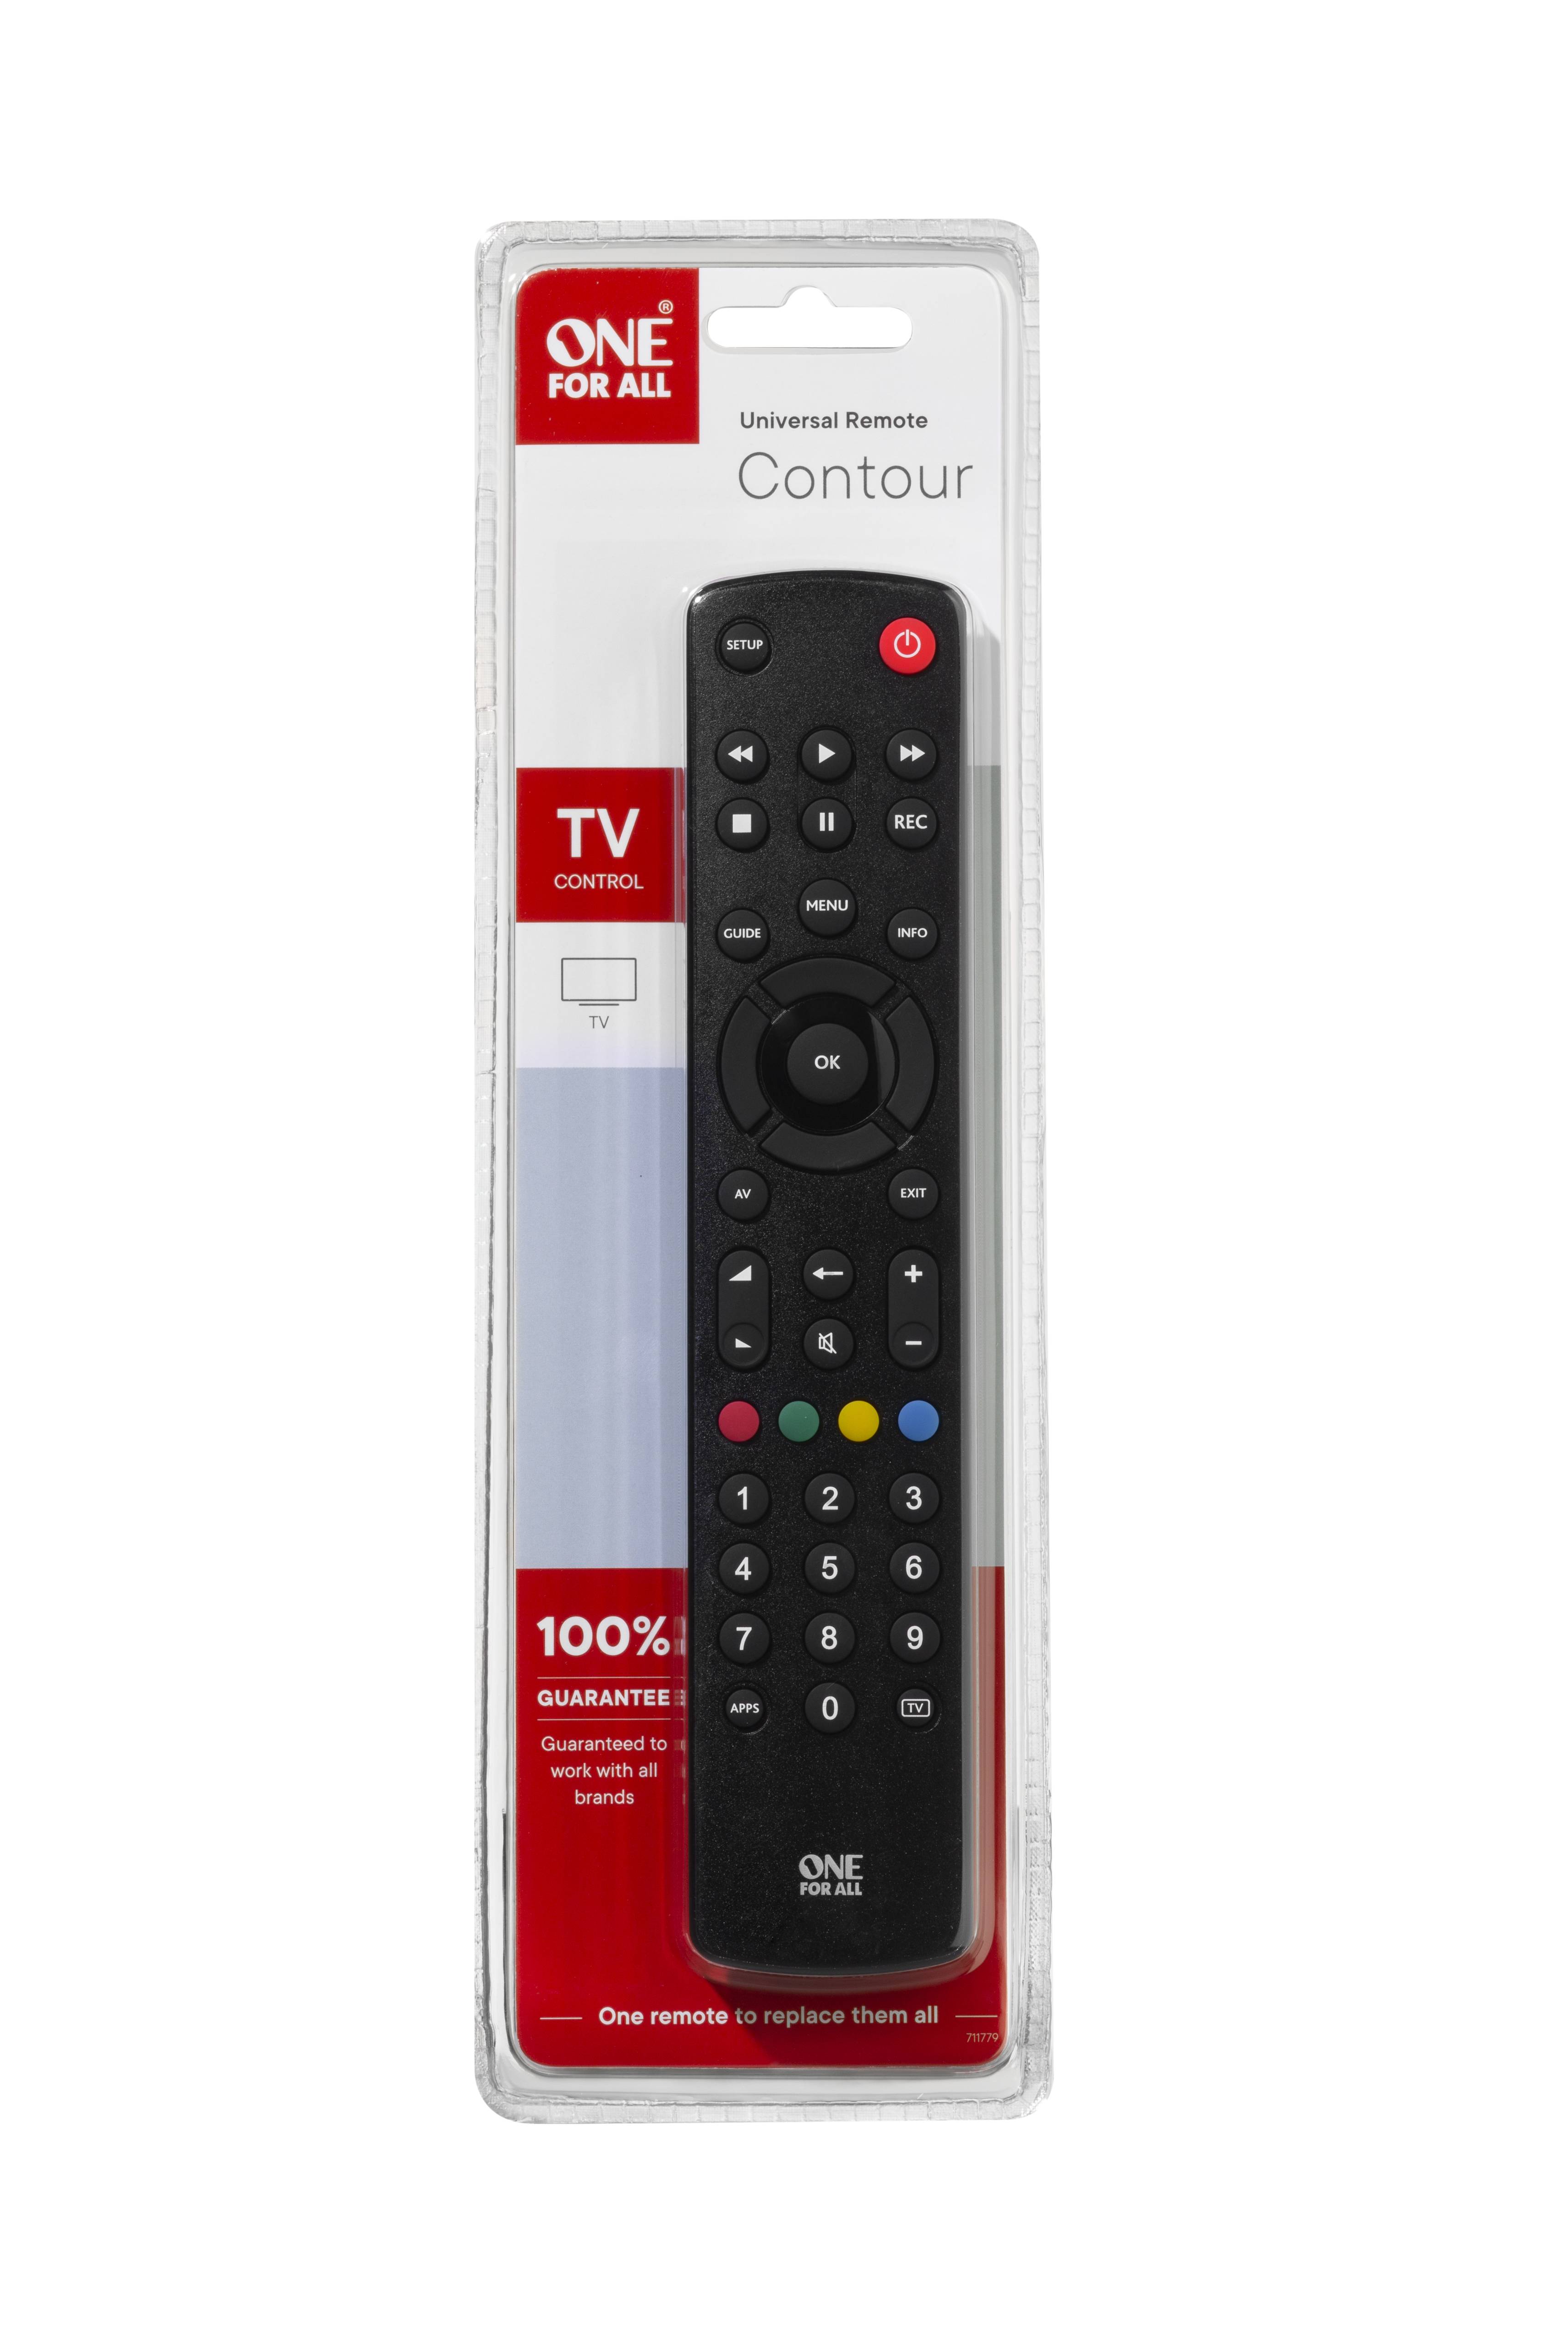 Noire Contrôle votre Téléviseur LED,LCD,Plasma One For All Contour TV Télécommande universelle URC 1210 - Garantie de fonctionner avec toutes les marques TV 